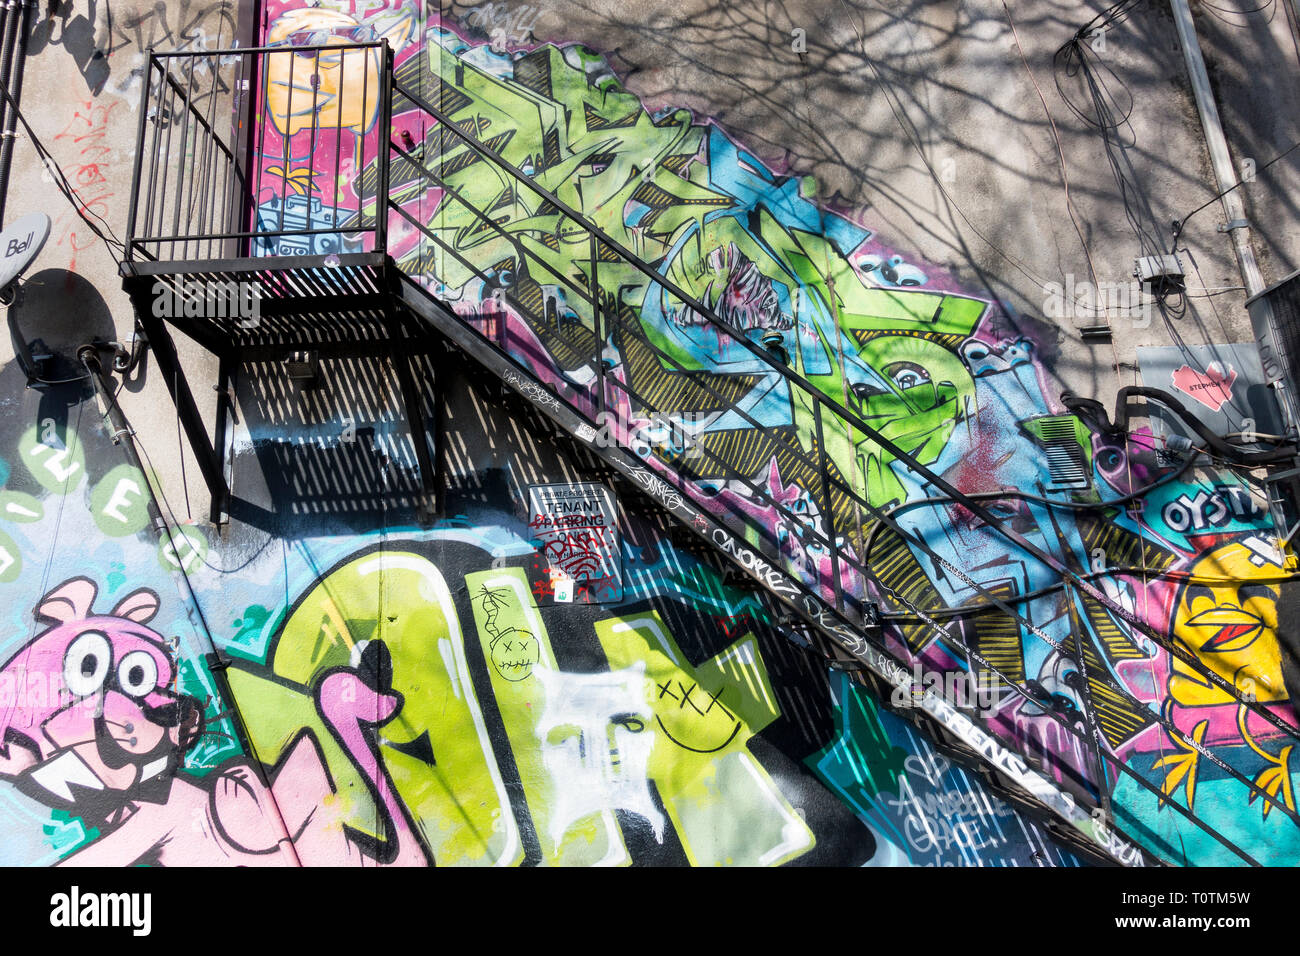 Eine große Anzahl von bunten Wandmalereien, die zu einer ungewöhnlichen Touristenattraktion in einer Gegend geworden sind, die als Graffiti Alley in Toronto Ontario Canada bekannt ist Stockfoto